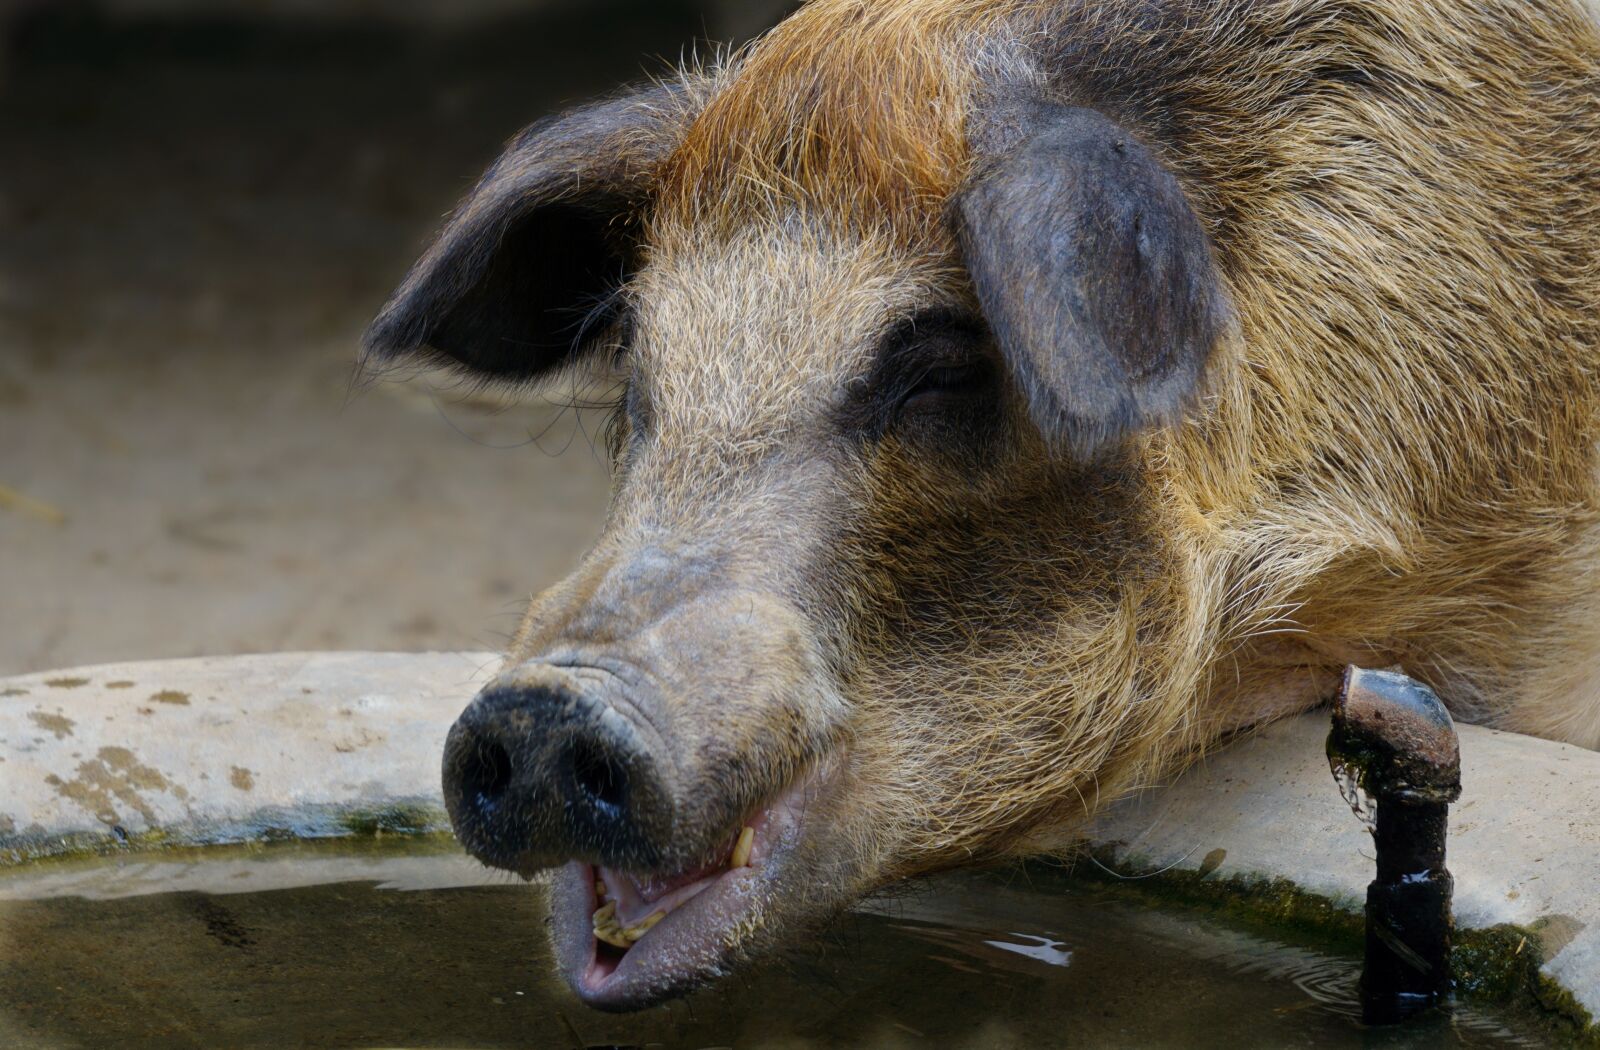 Sony a6000 sample photo. Pig, animal, farm photography